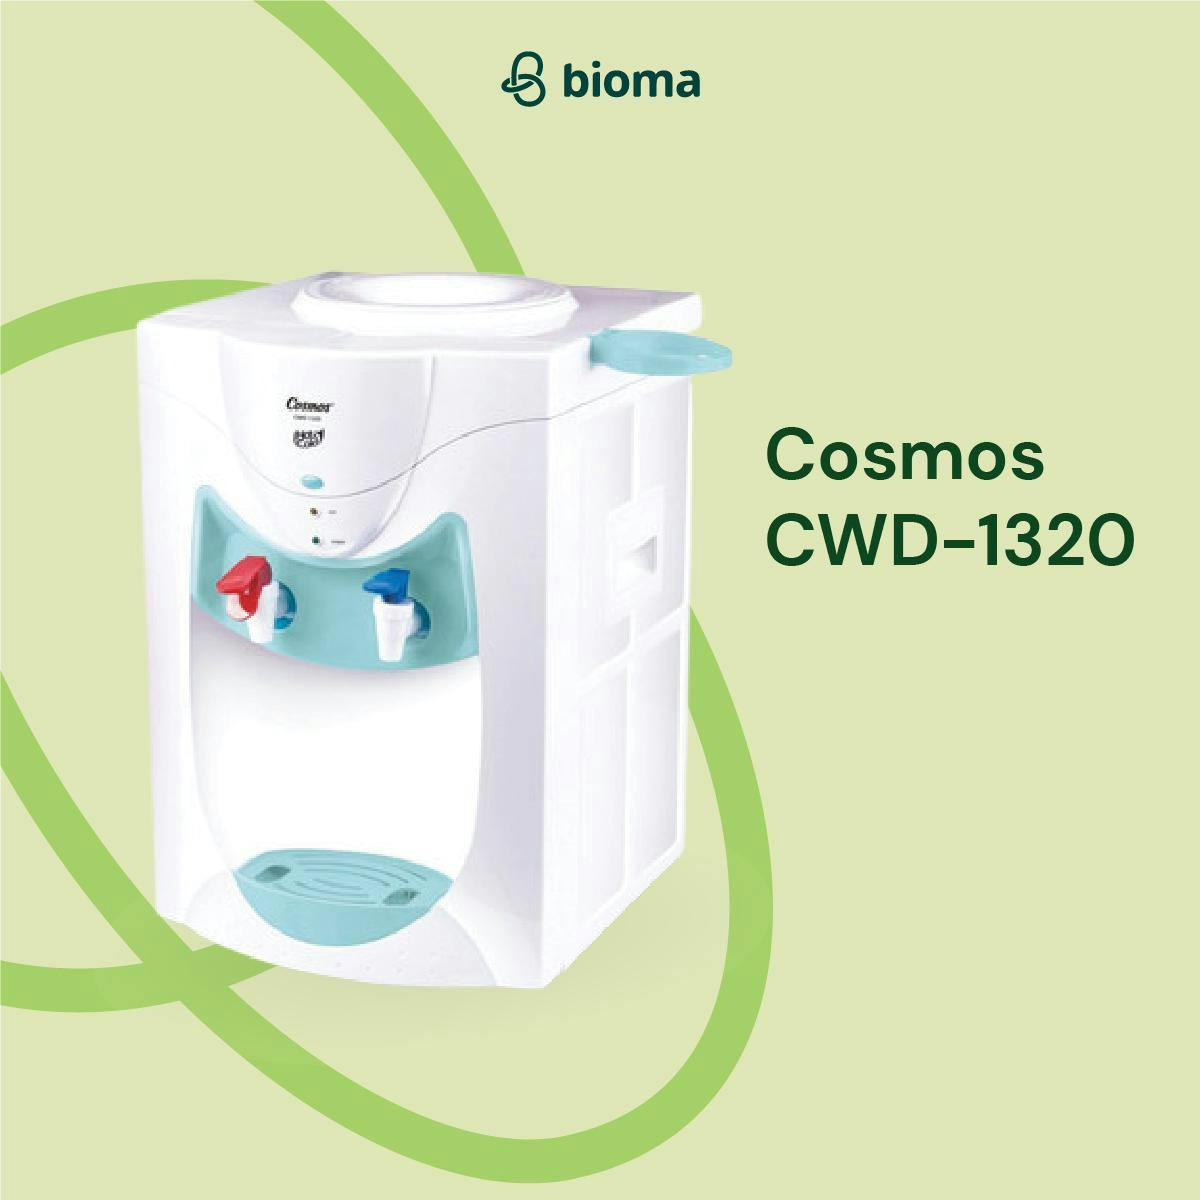 Cosmos CWD-1320